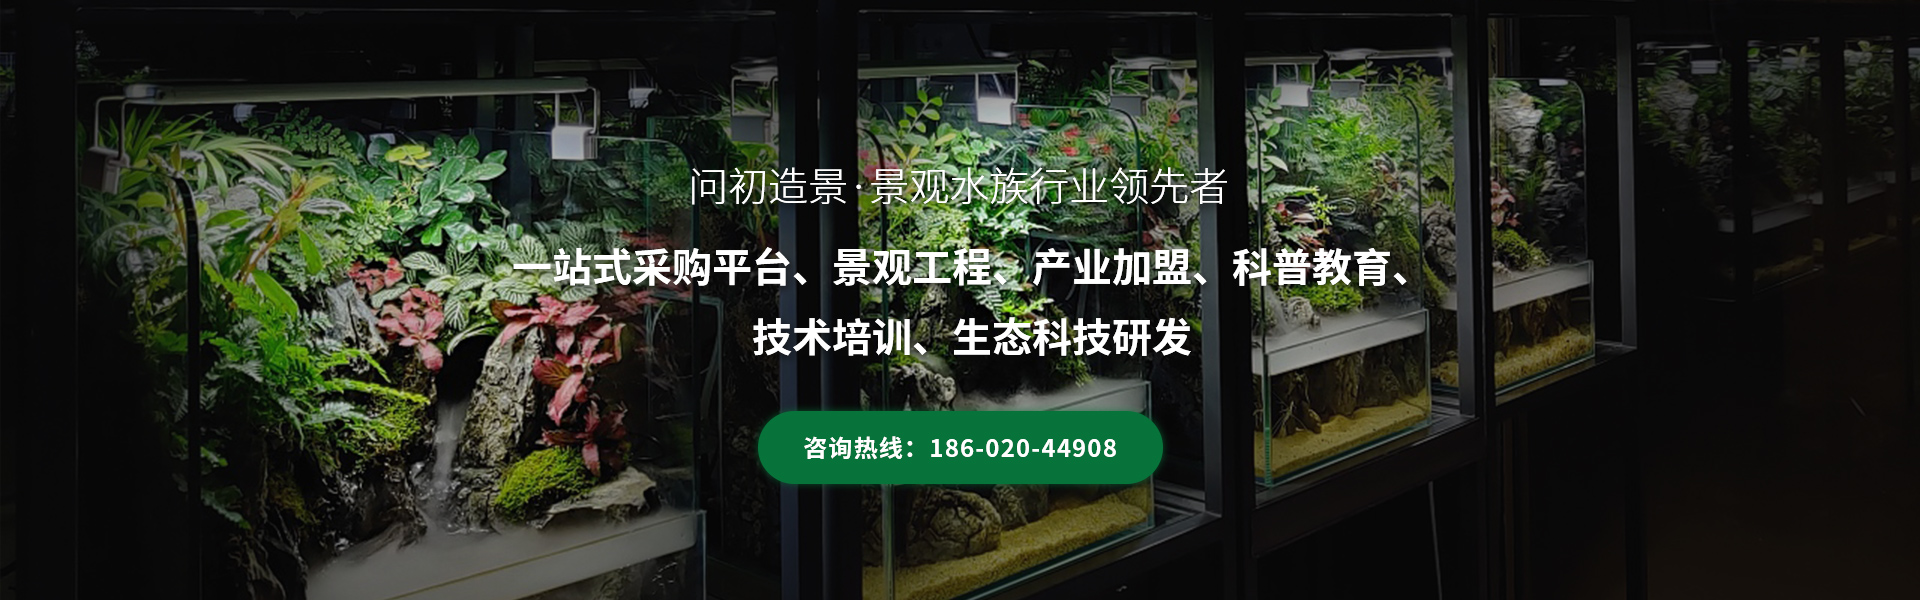 广州问初造景专注雨林生态缸景观行业超6年